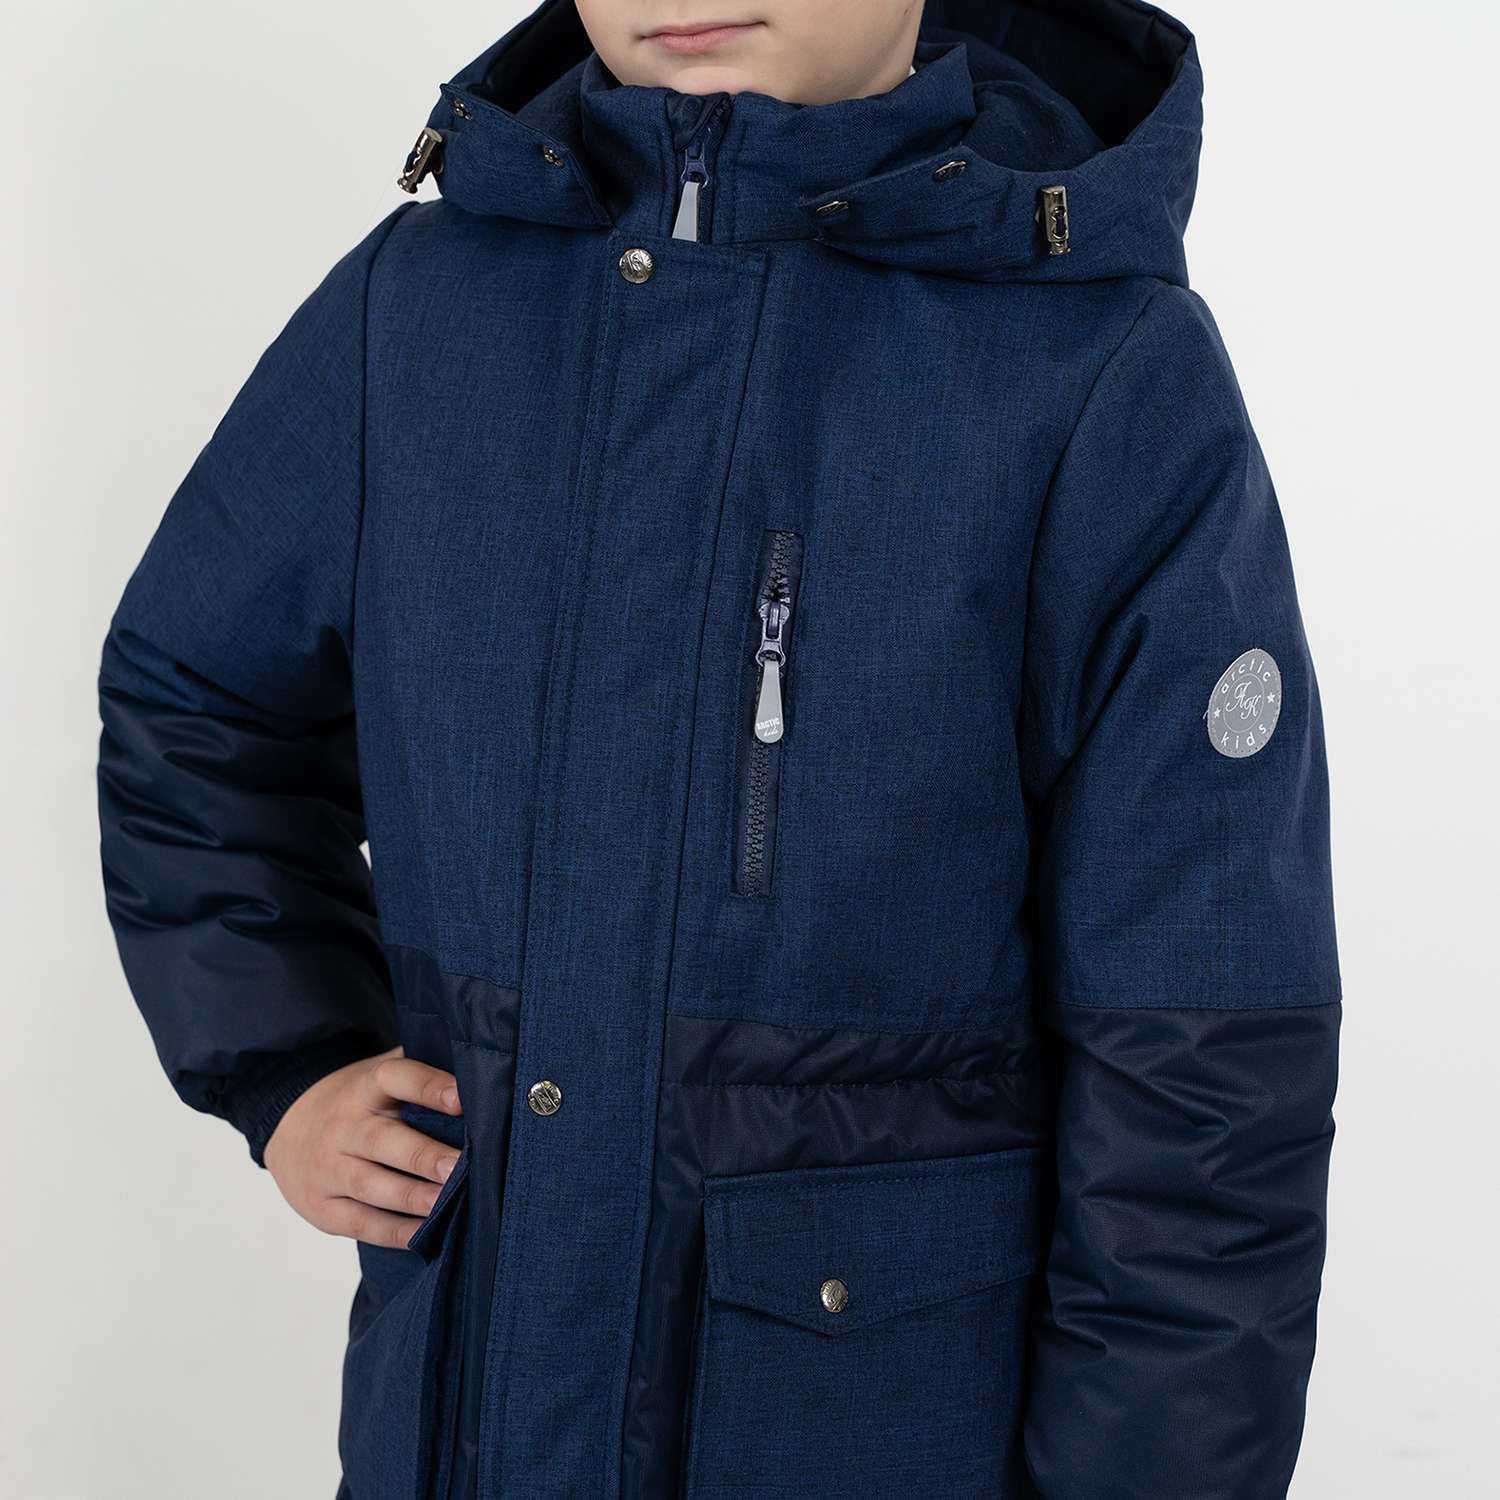 Куртка Arctic kids 70-046 темно-синий - фото 3